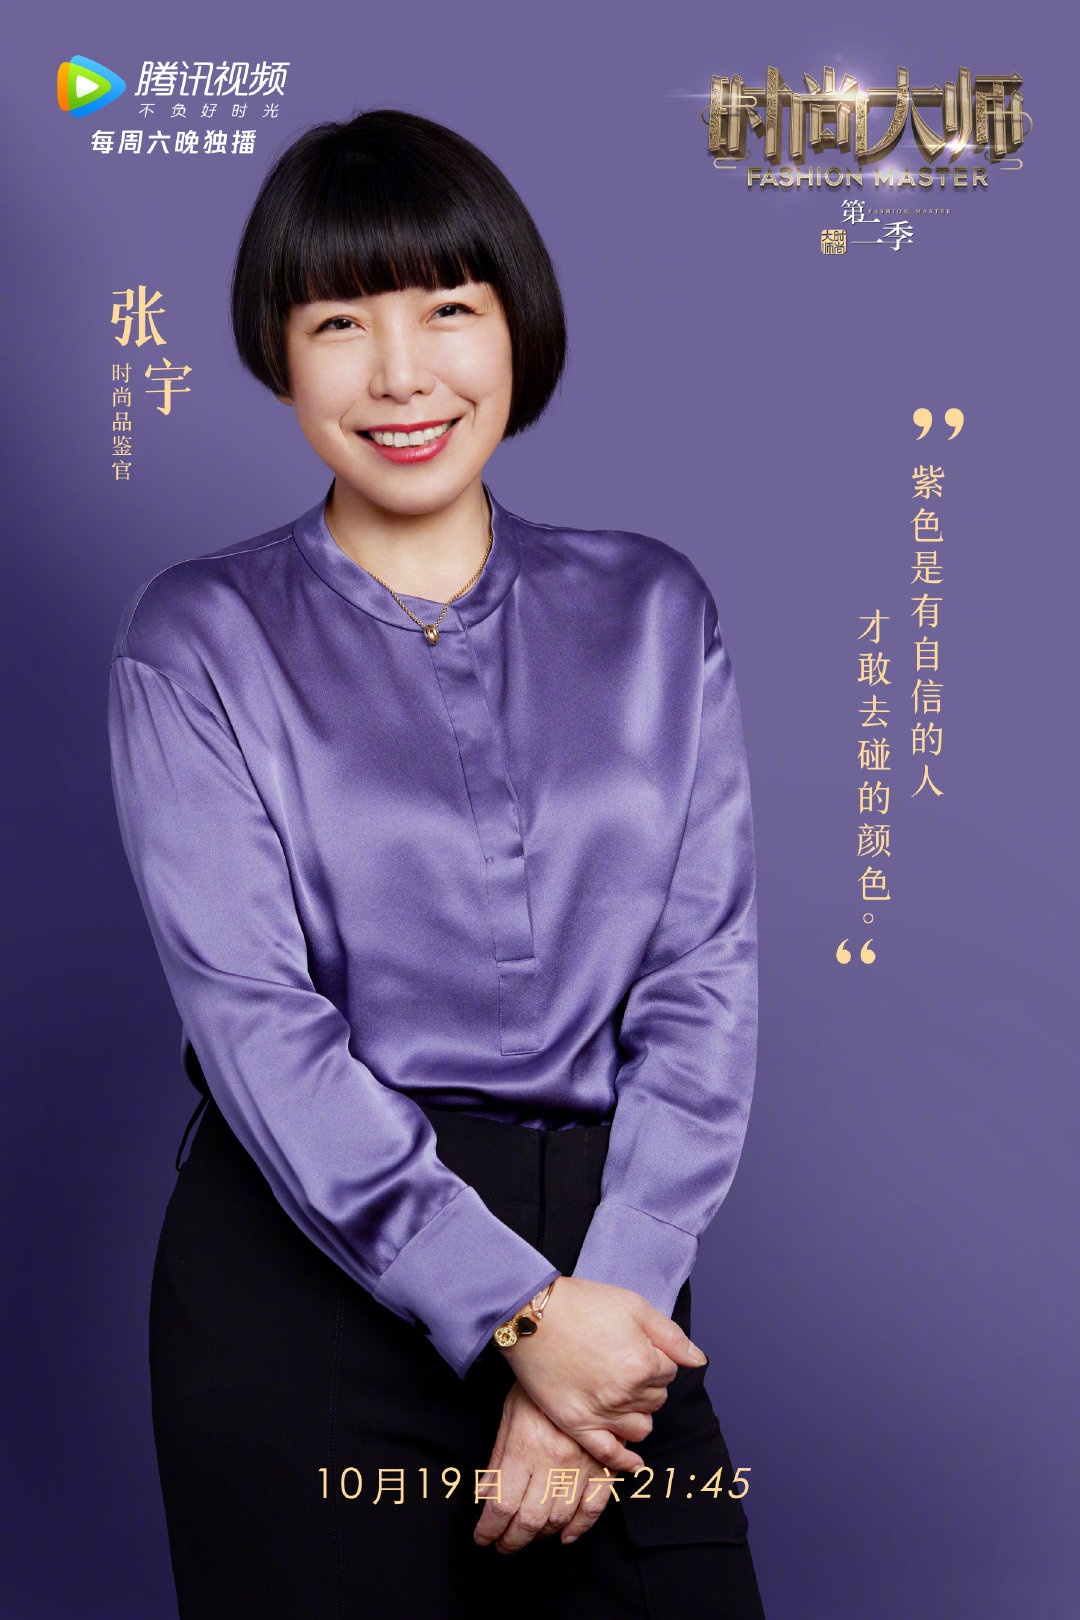 《时尚大师》第六期紫色主题集结时尚品鉴官张宇 ,国际知名华人设计